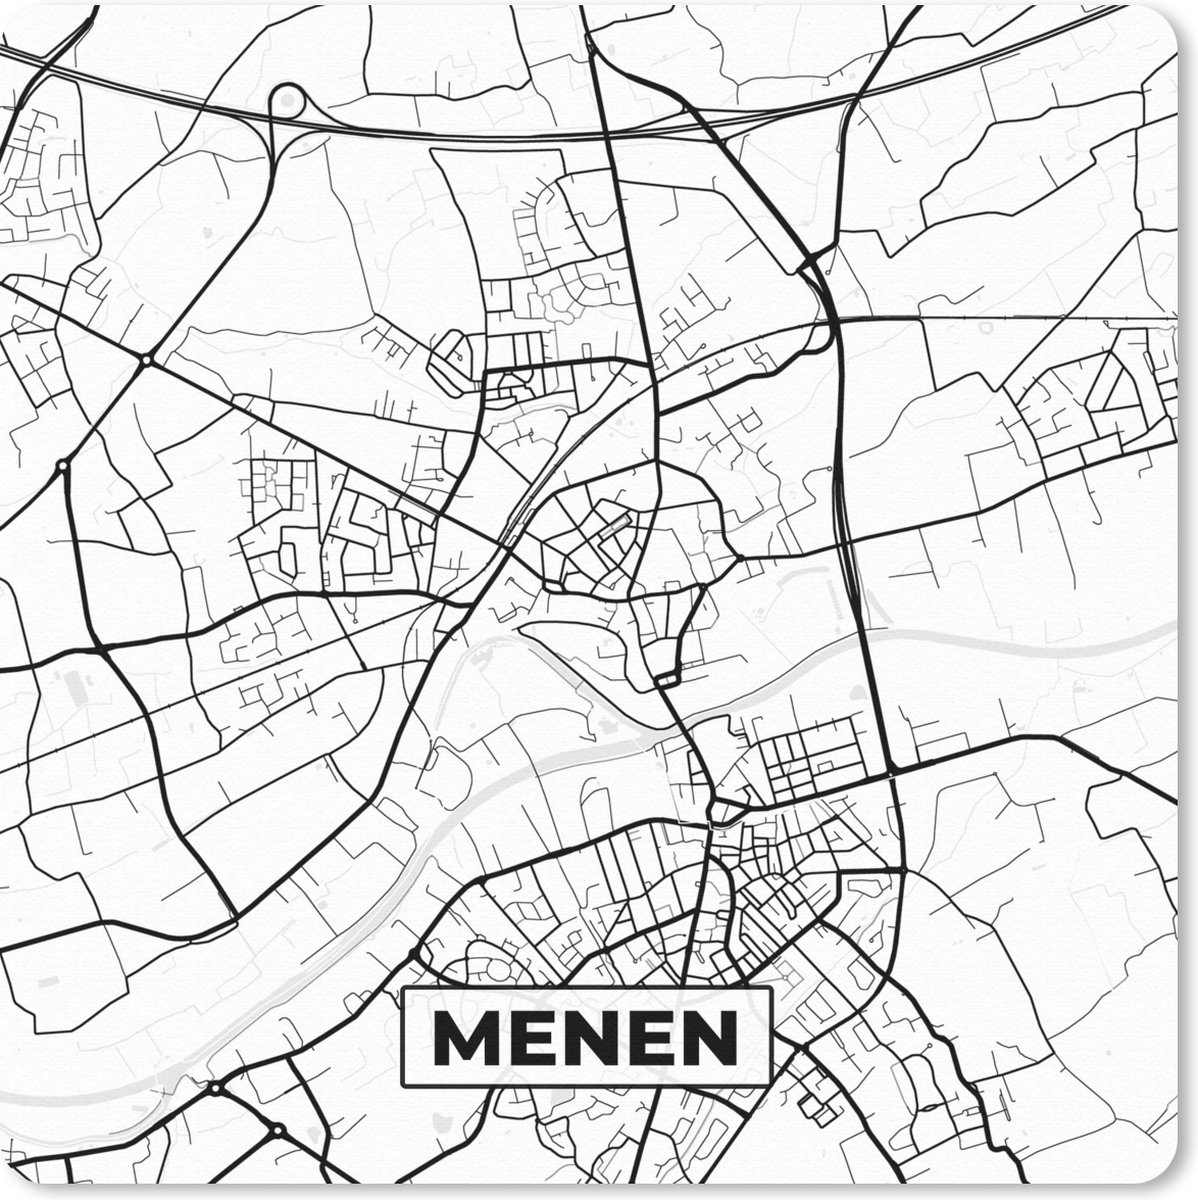 Muismat - Mousepad - Kaart – Plattegrond – Stadskaart – Menen – België – Zwart Wit - 30x30 cm - Muismatten